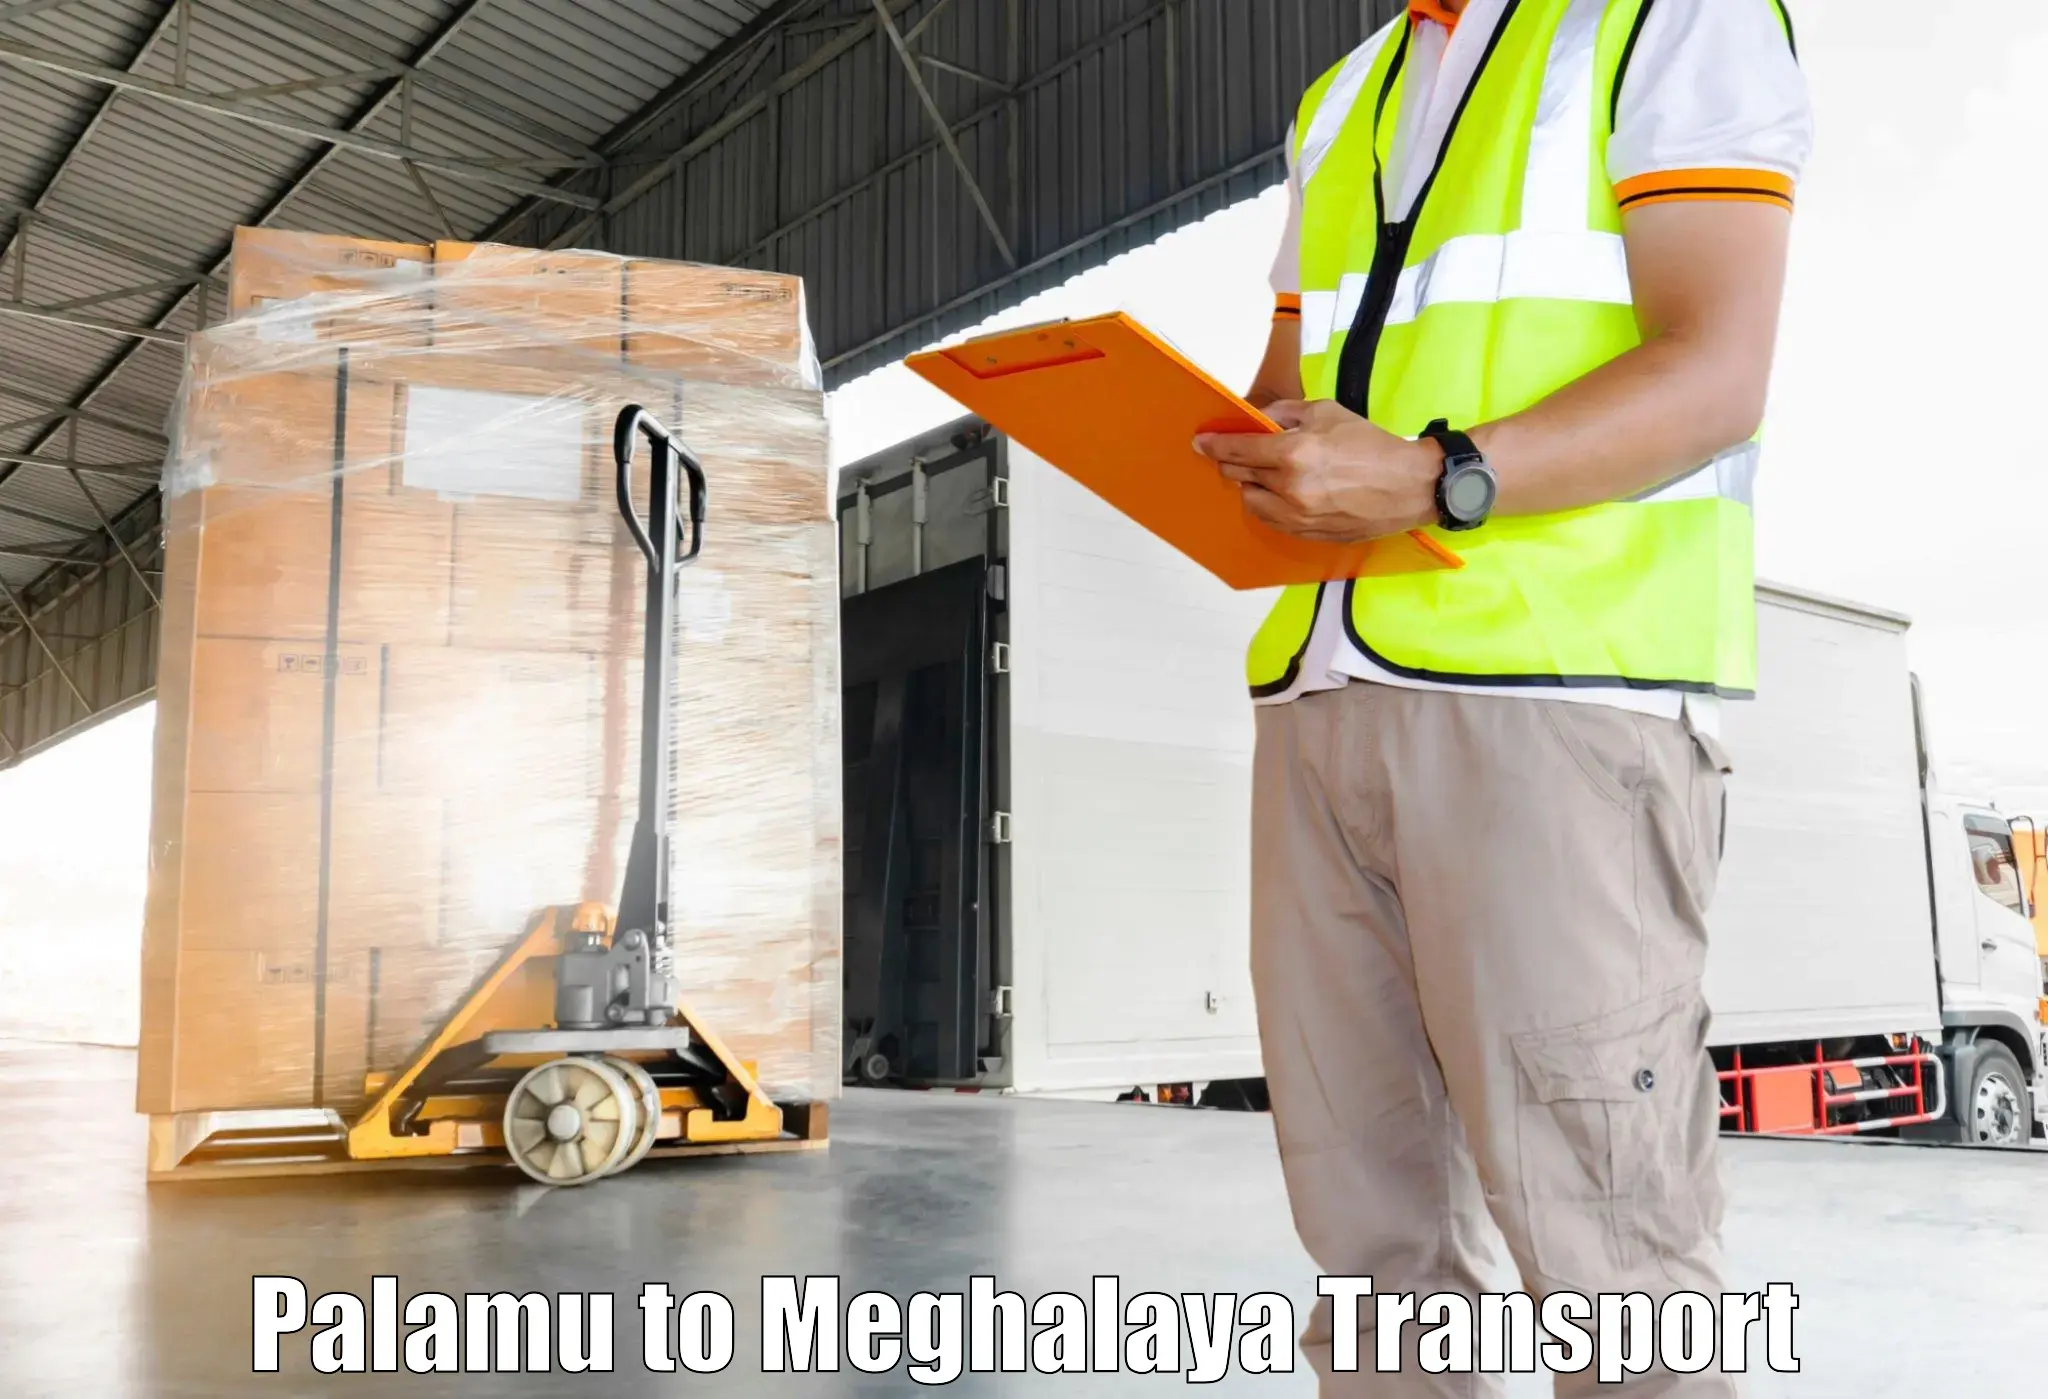 All India transport service Palamu to Meghalaya